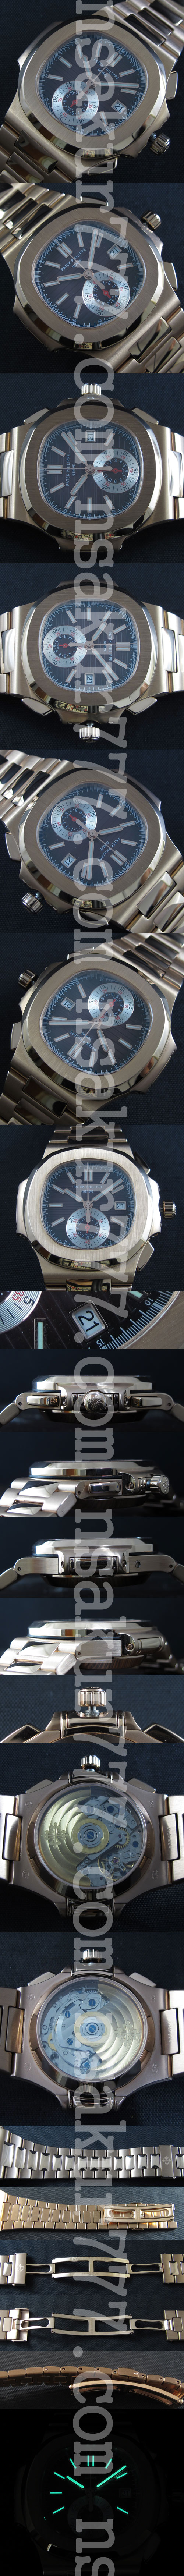 【44mm*14mm】パテック・フィリップ ノーチラス スタイリッシュ腕時計